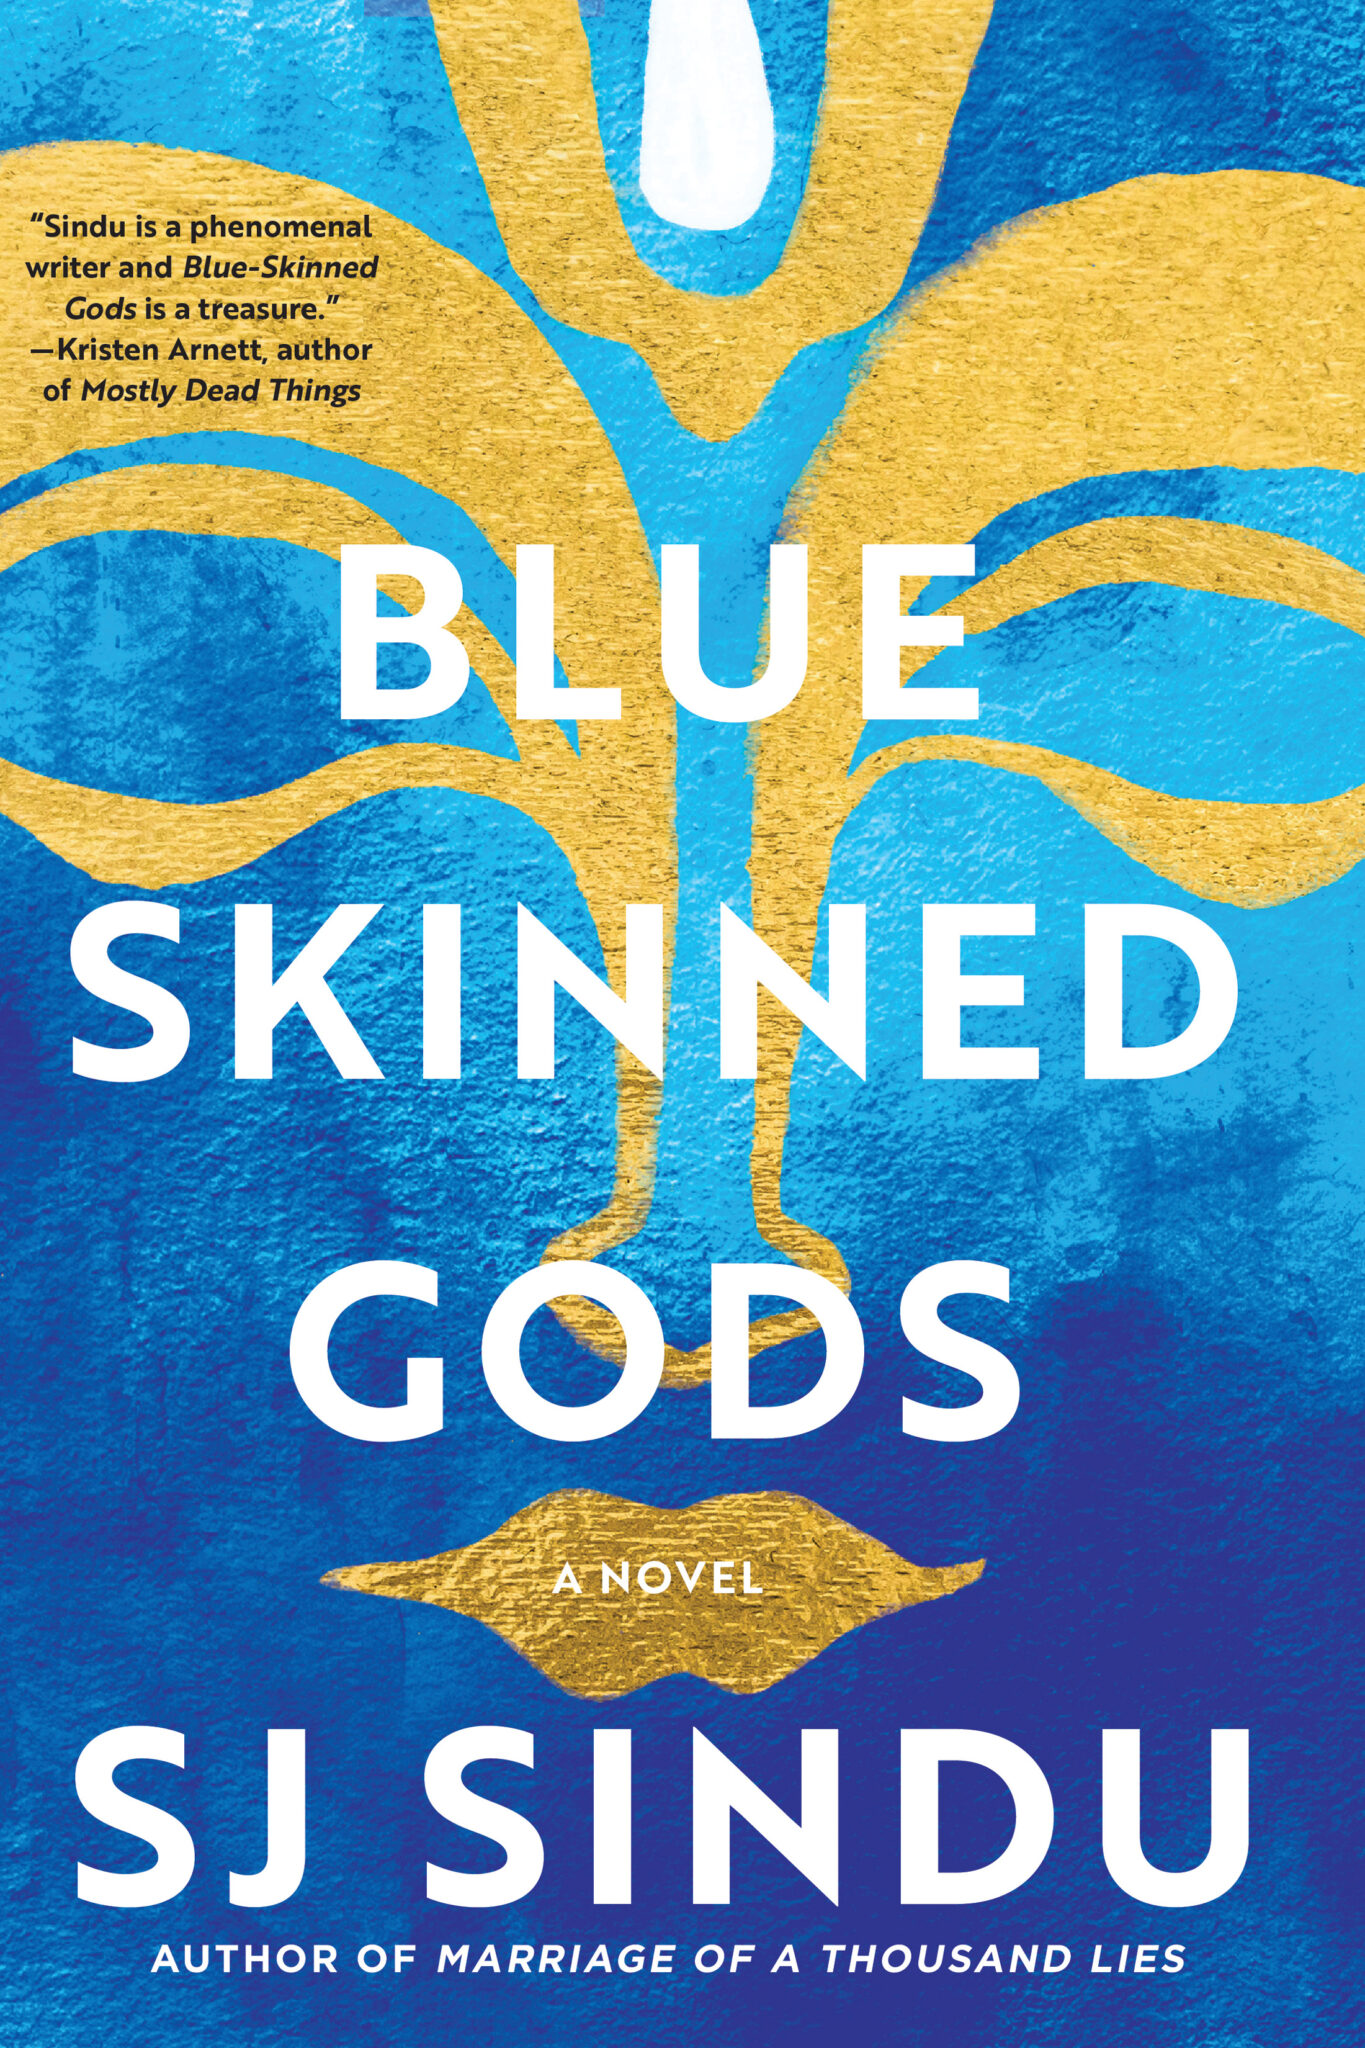 Blue-Skinned Gods by S.J. Sindu